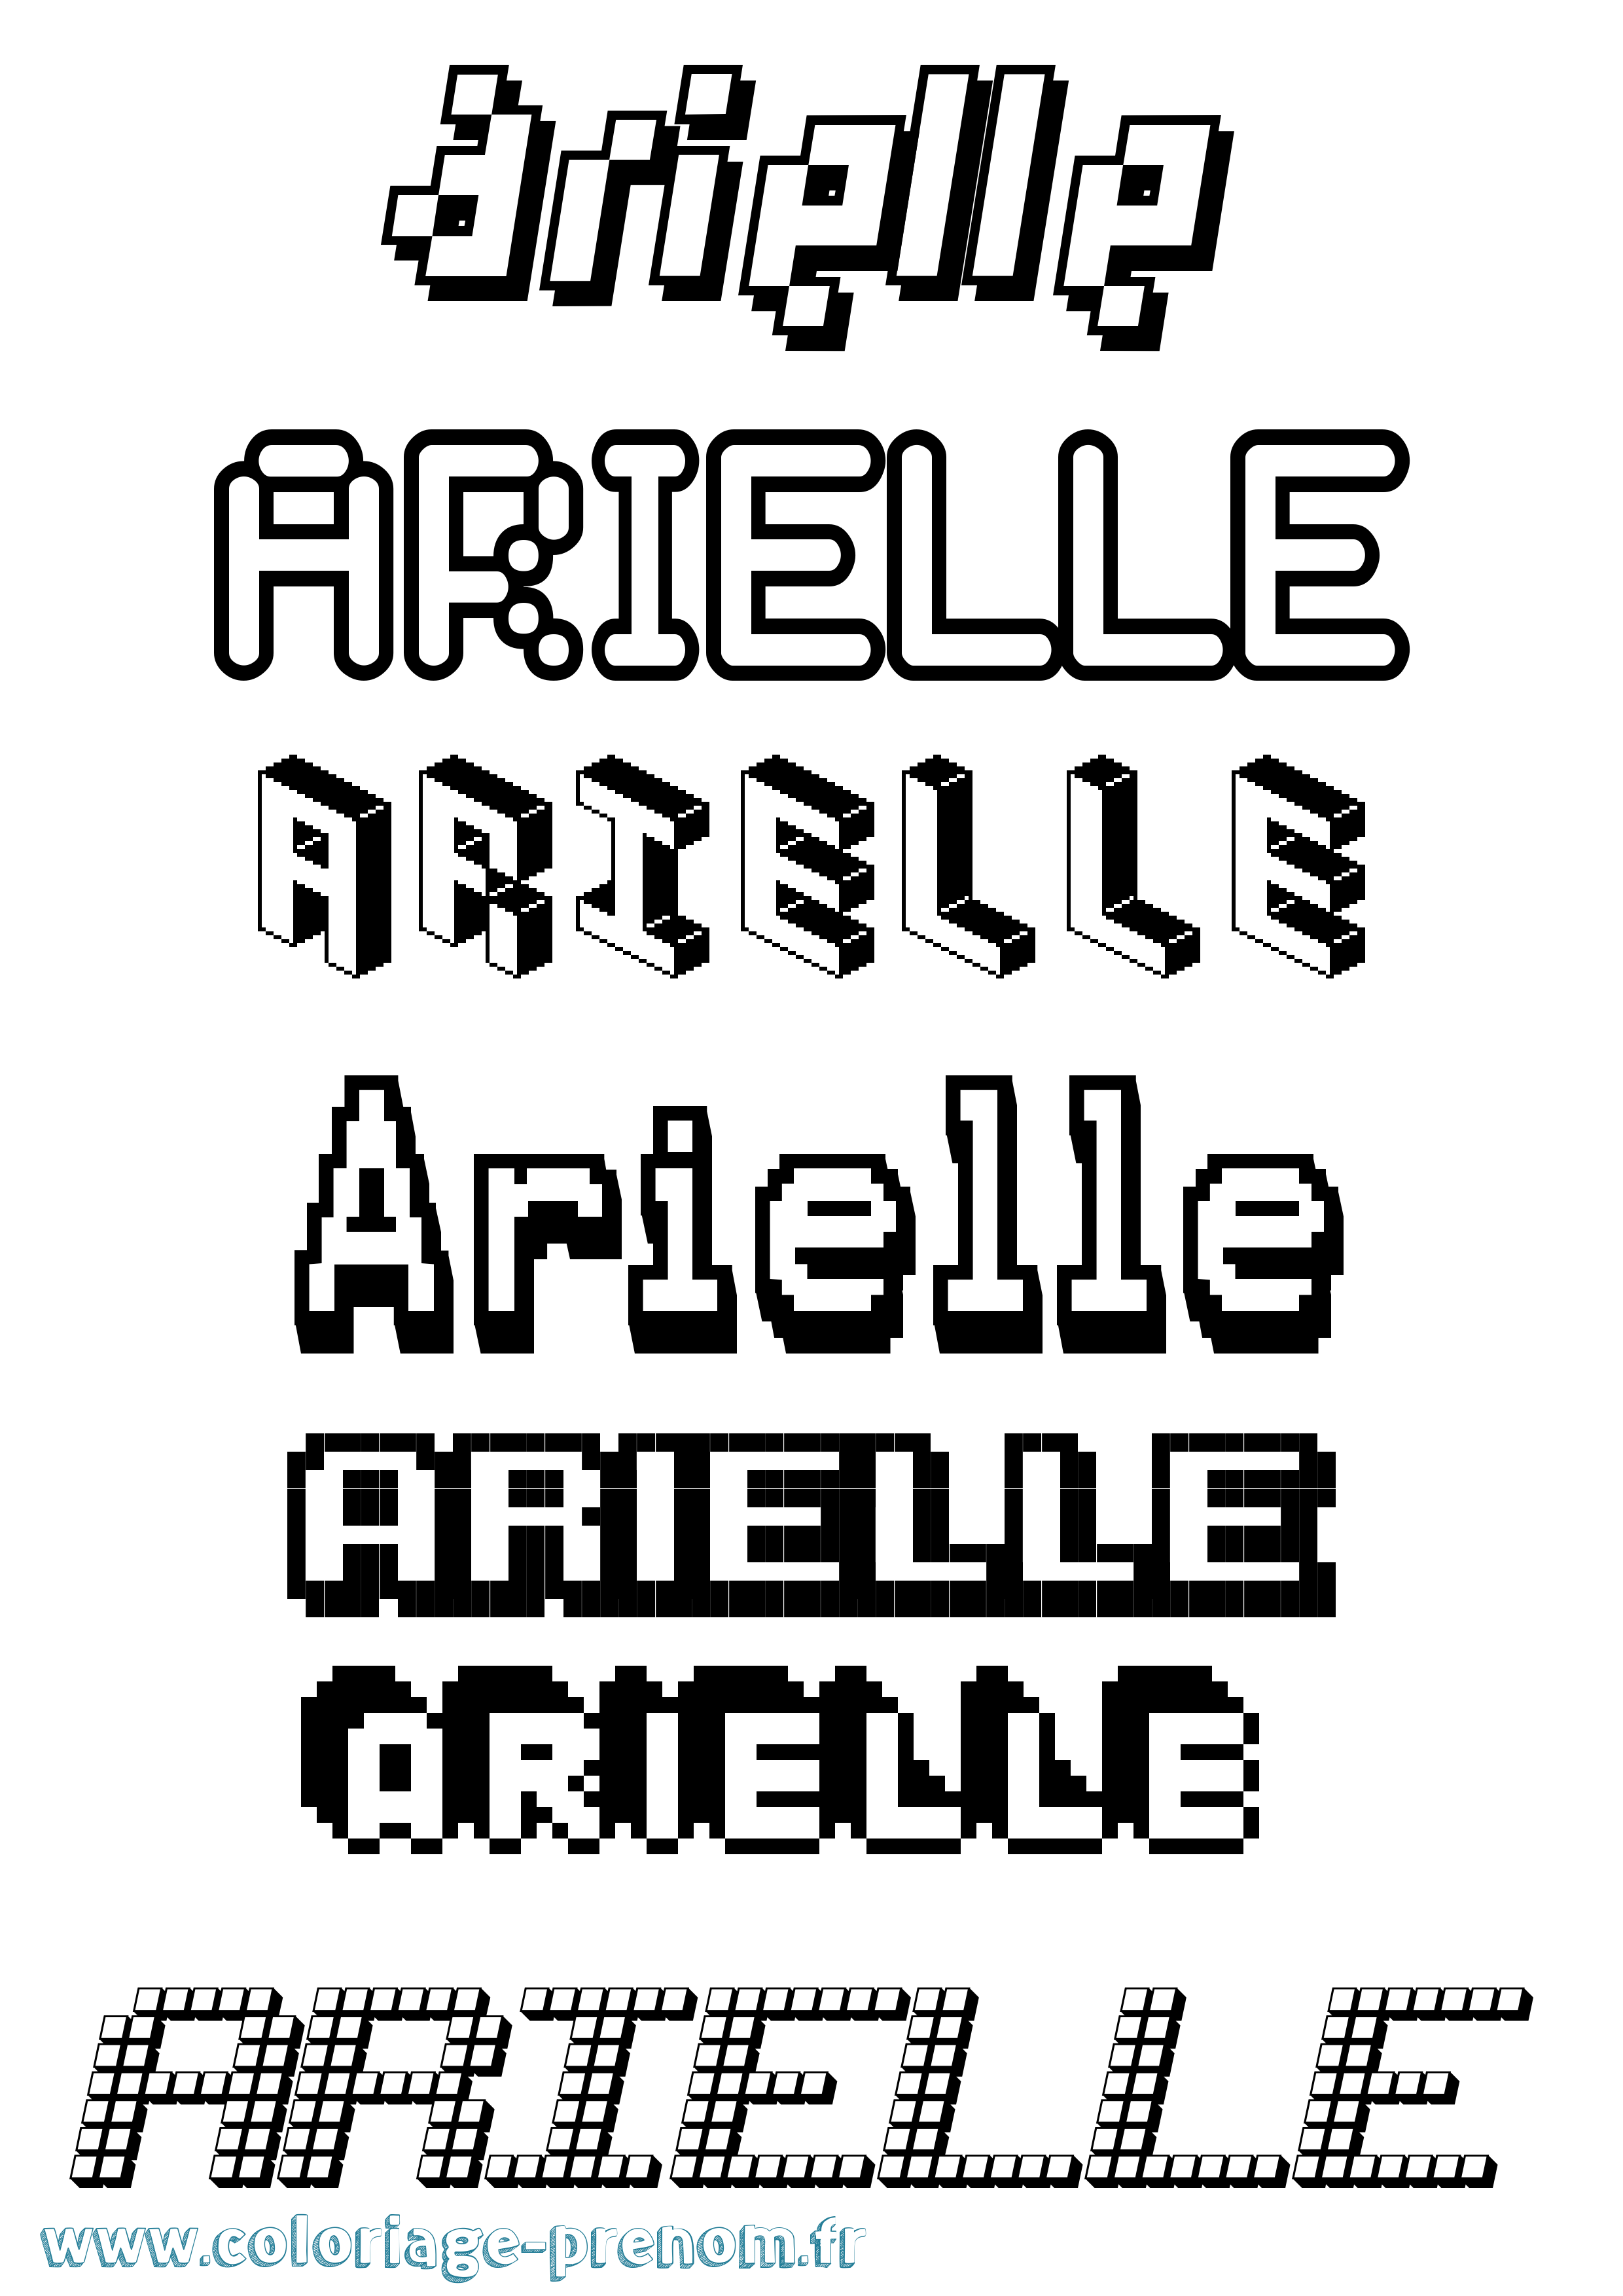 Coloriage prénom Arielle Pixel